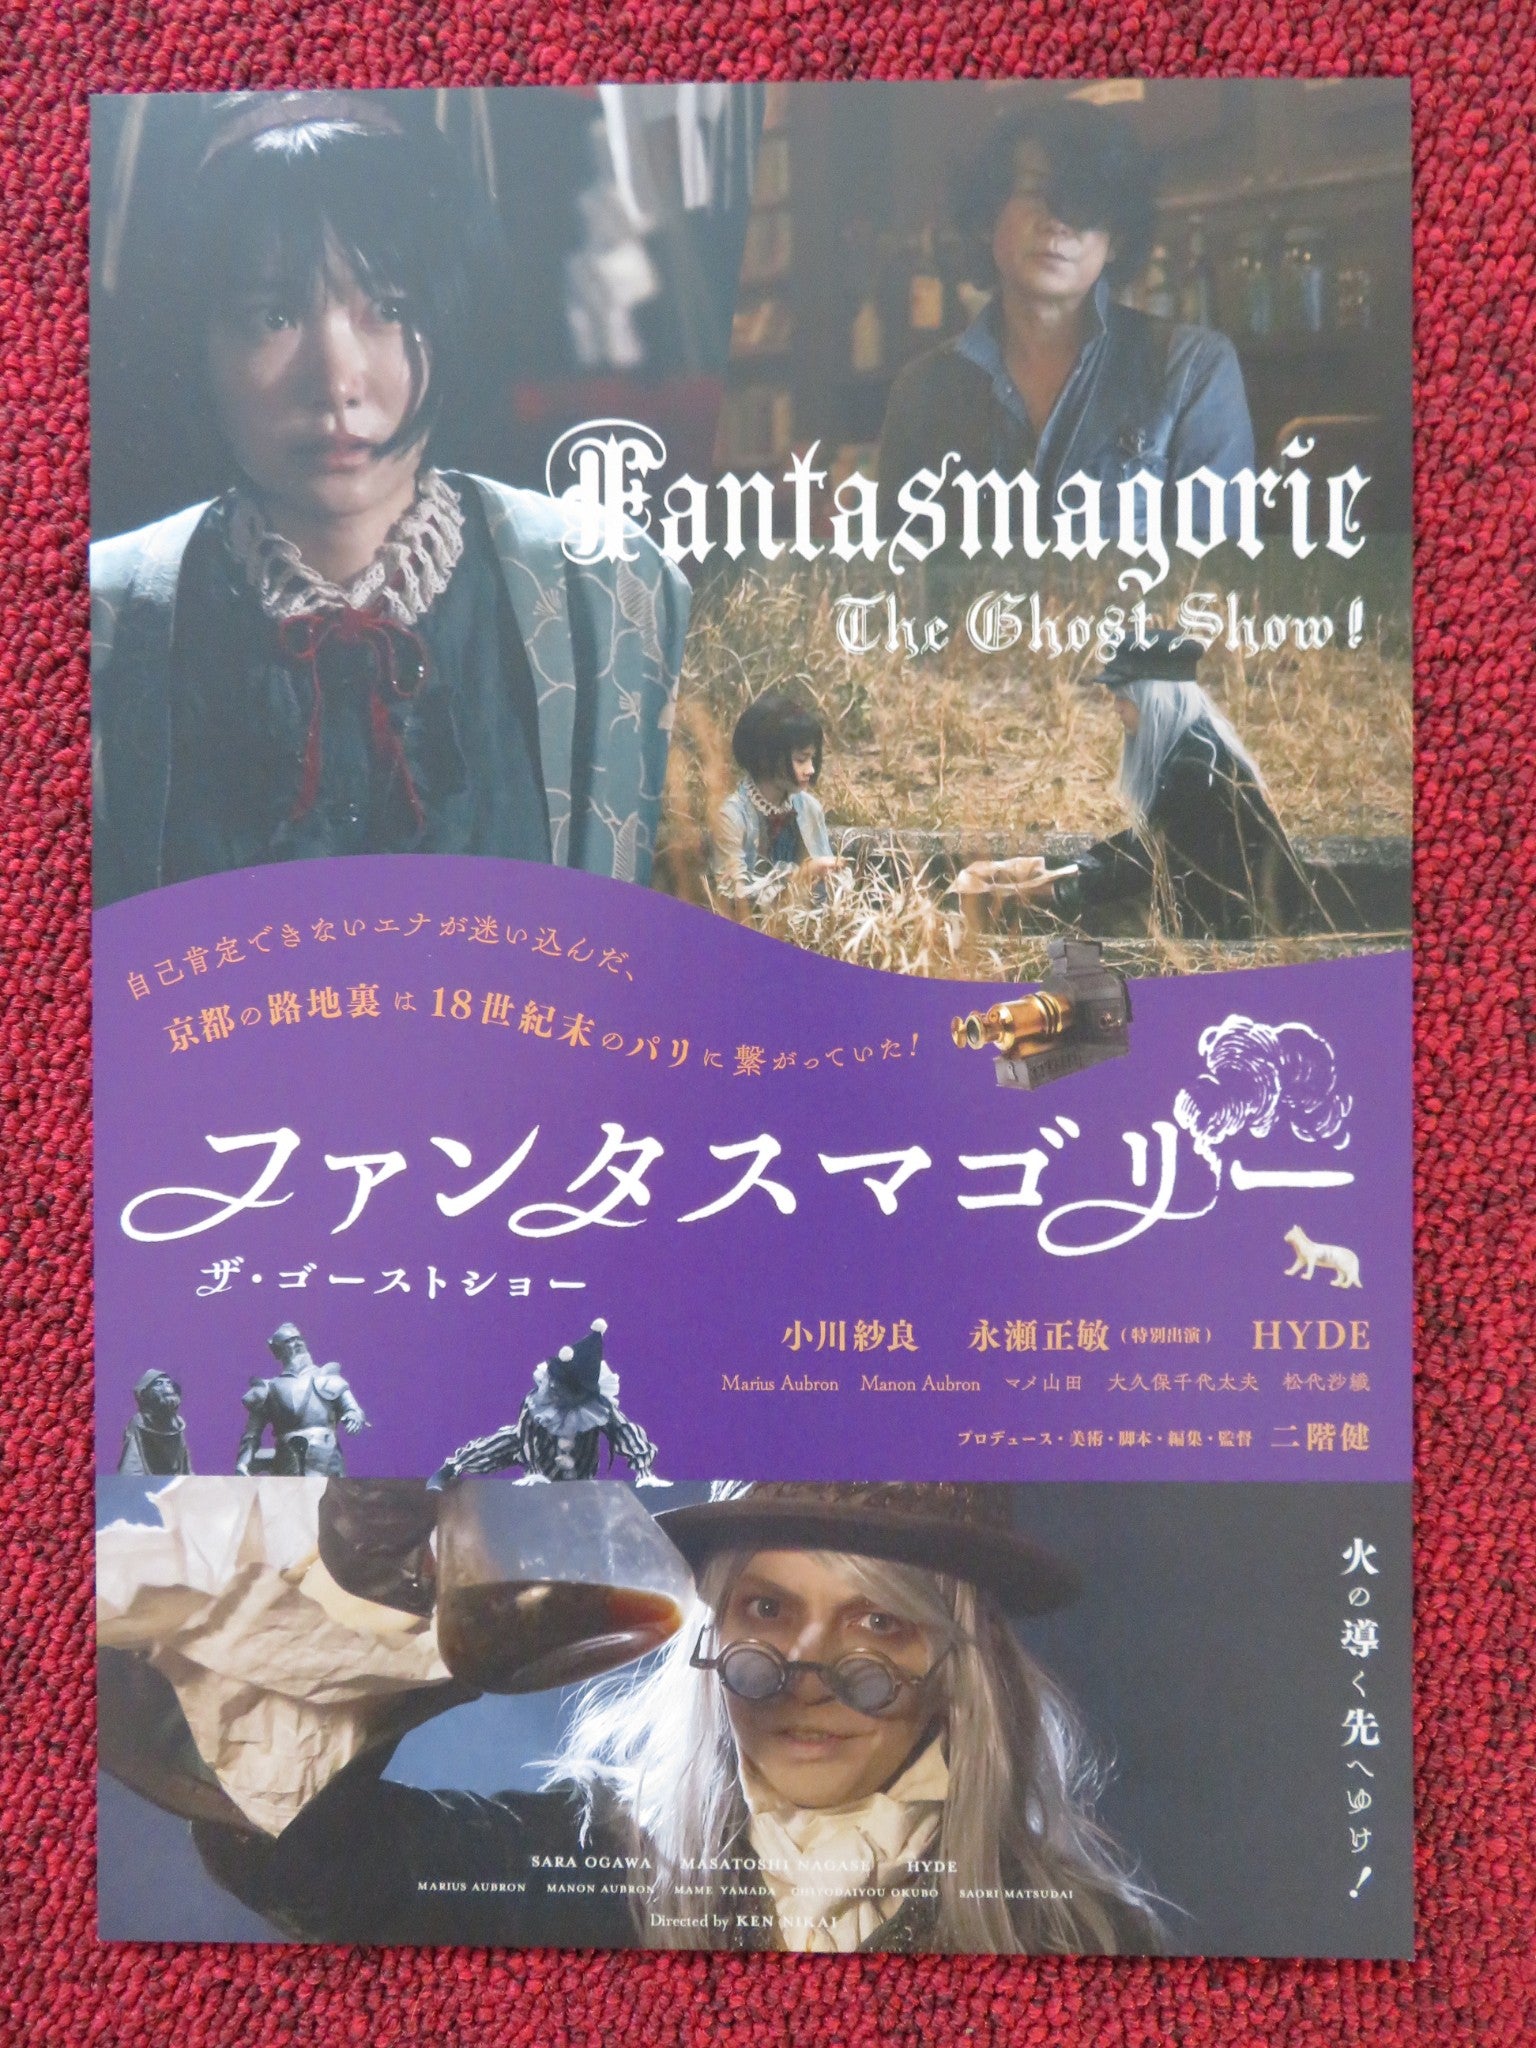 全ての 日本映画 Fantasmagorie show ghost the 日本映画 